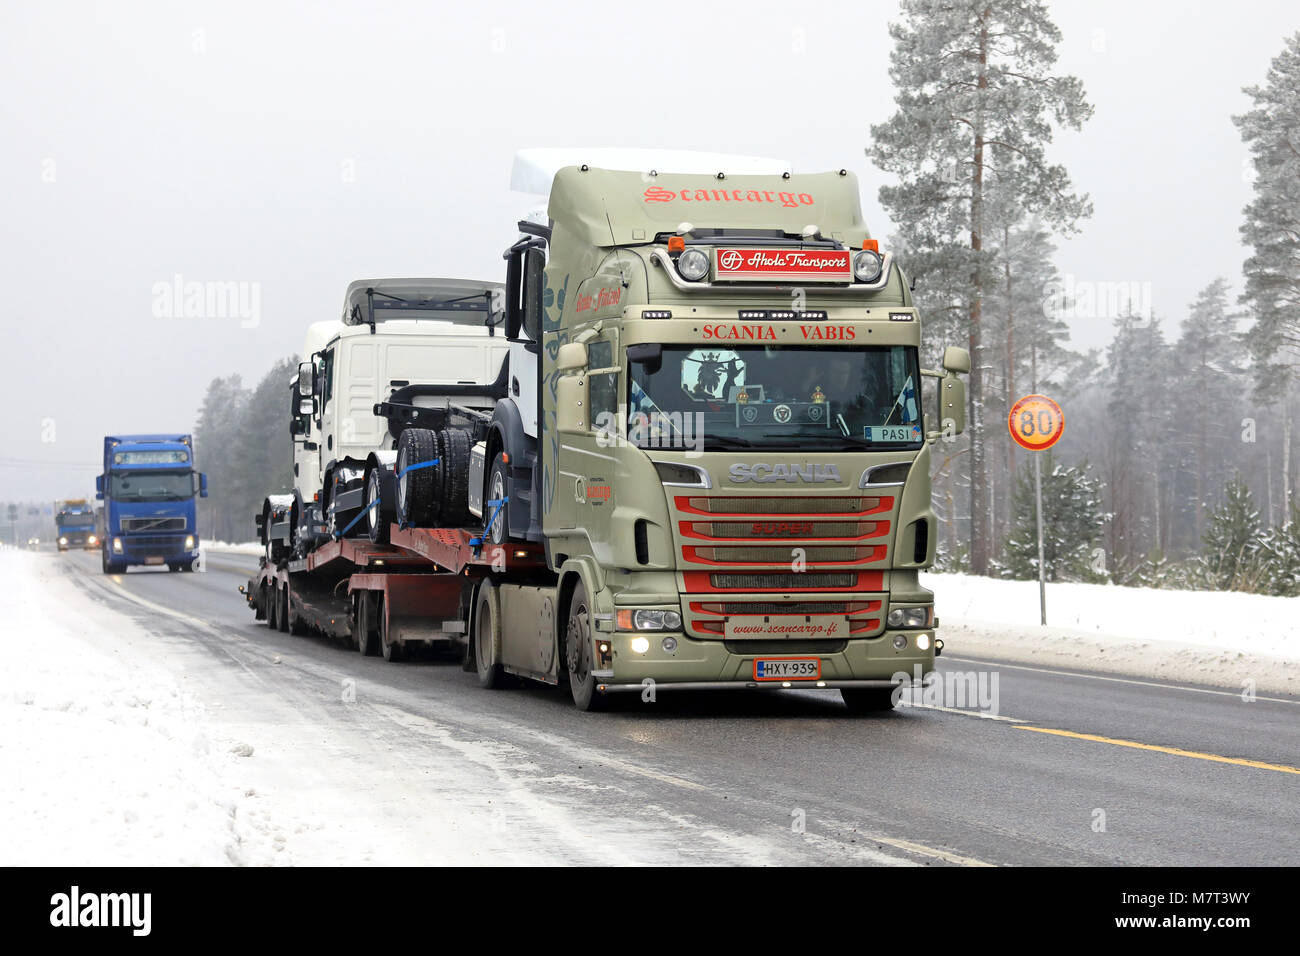 RAASEPORI, FINNLAND - Februar 9, 2018: Scania Lkw Fahrzeug Träger von Oy ScanCargo Ltd Transporte neue Lkw entlang der winterlichen Highway in der Nähe der Hafen Hanko Stockfoto